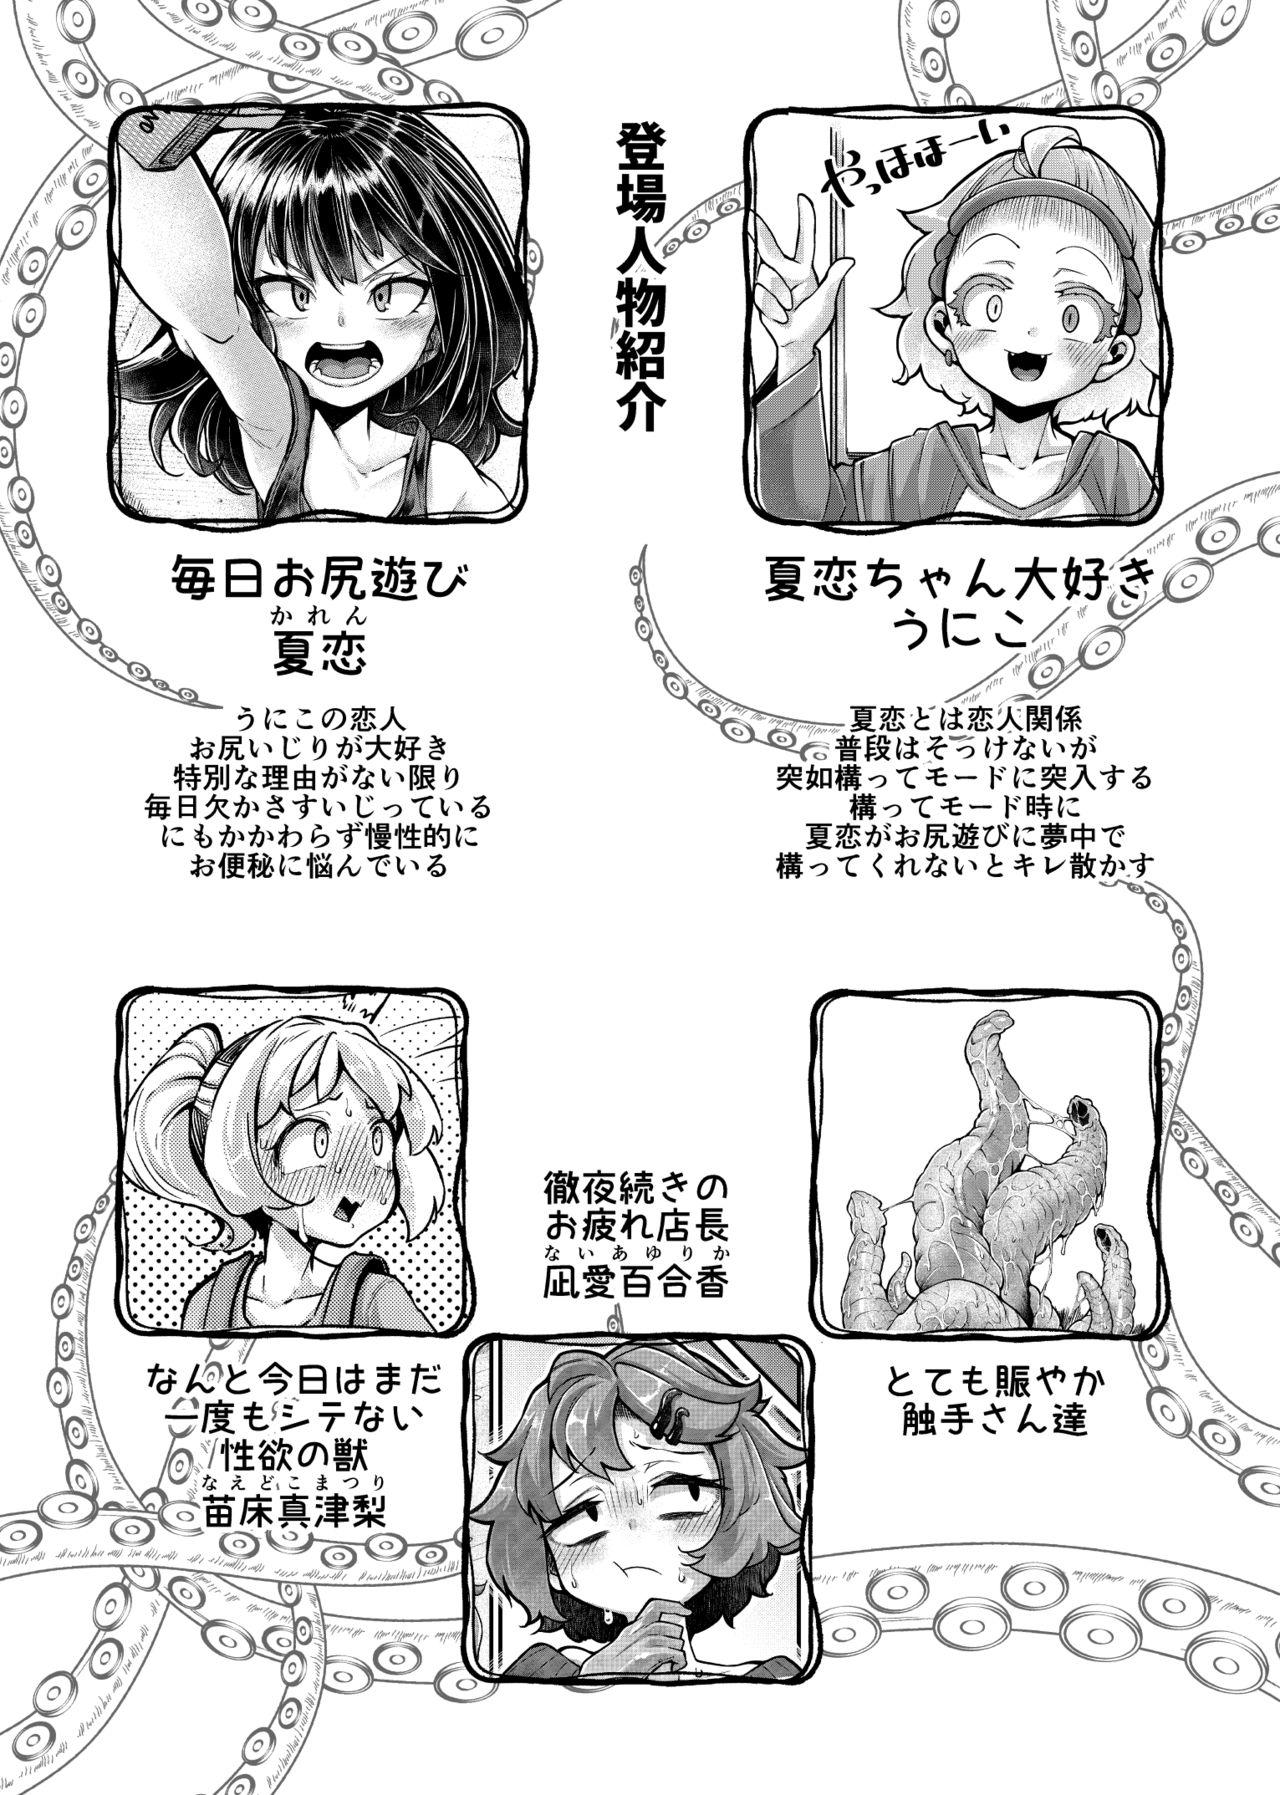 Gaydudes Anata no Machi no Shokushuya-san 4.5 - Original Urine - Page 4